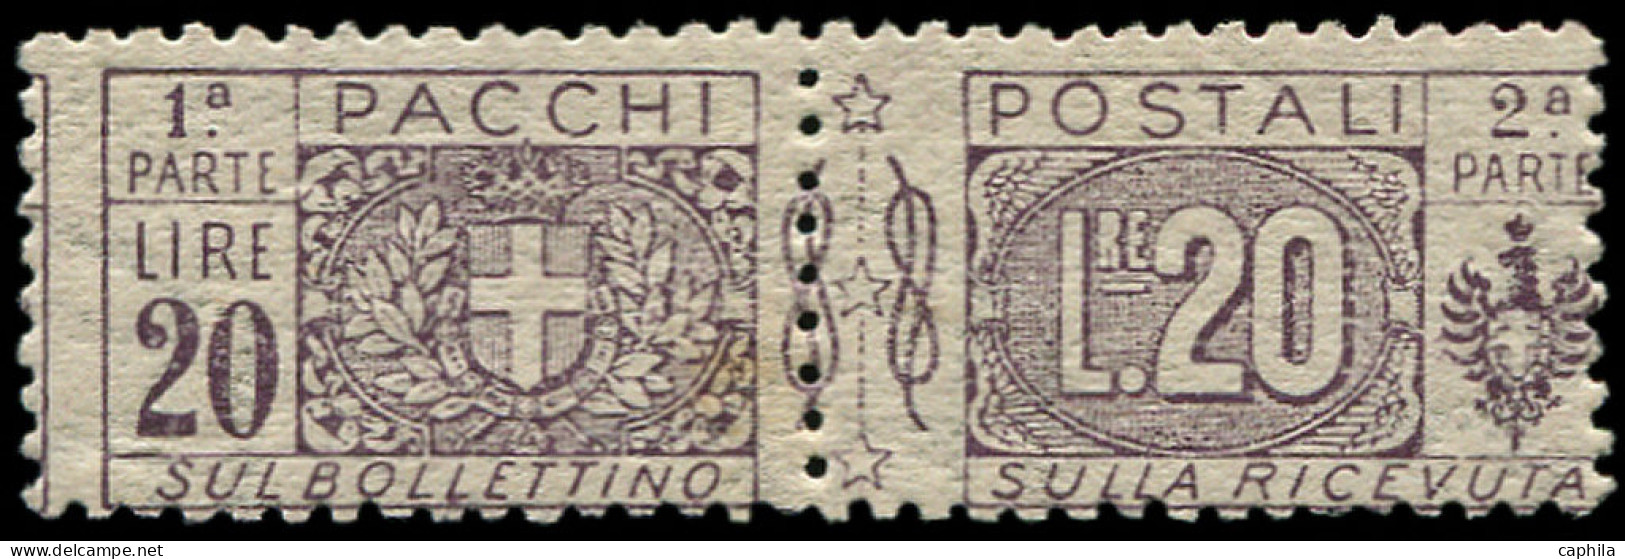 ** ITALIE - Colis Postaux - 19, 20l. Violet-brun (Sas. 19) - Colis-postaux